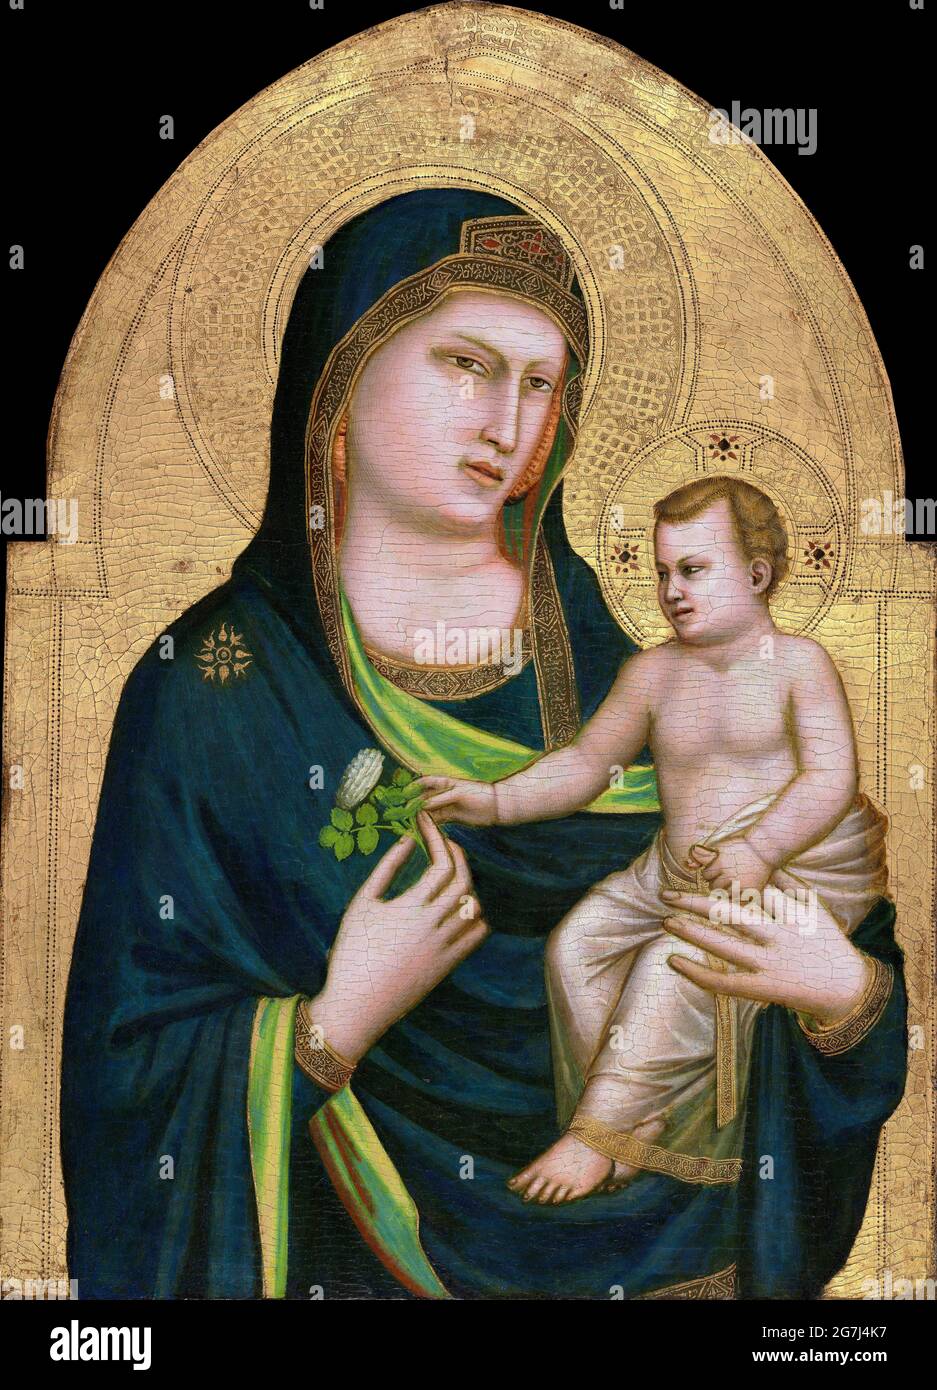 Giotto. Madonna mit Kind von Giotto di Bondone (ca. 1266-1337), Tempera auf Tafel, c. 1320-30 Stockfoto